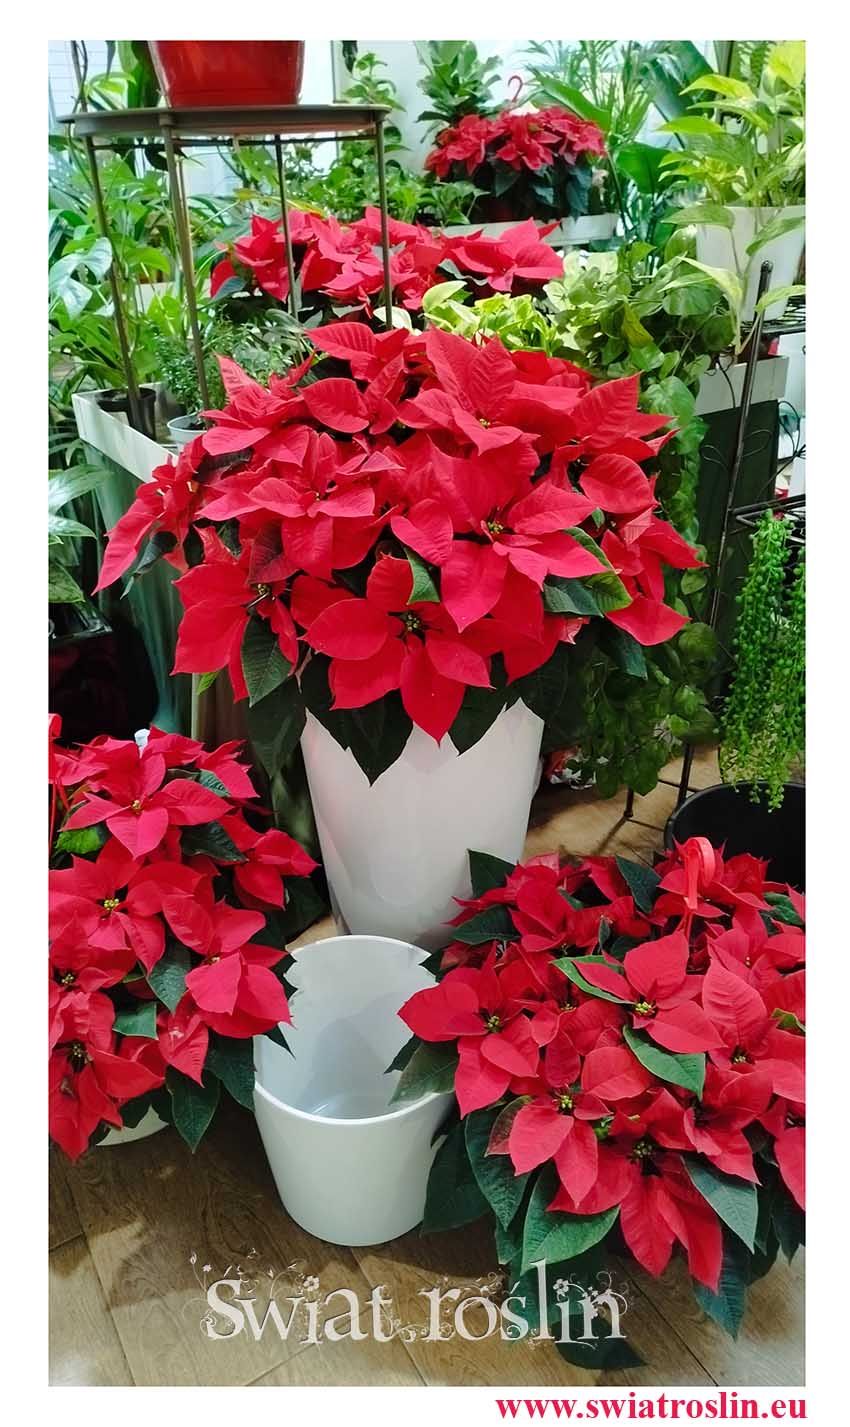 czerwona roślina świąteczna Poinsecja, czerwona roślina bożonarodzeniowa Gwiazda Betlejemska, Wilczomlecz nadobny, wilczomlecz piękny, poinsecja nadobna